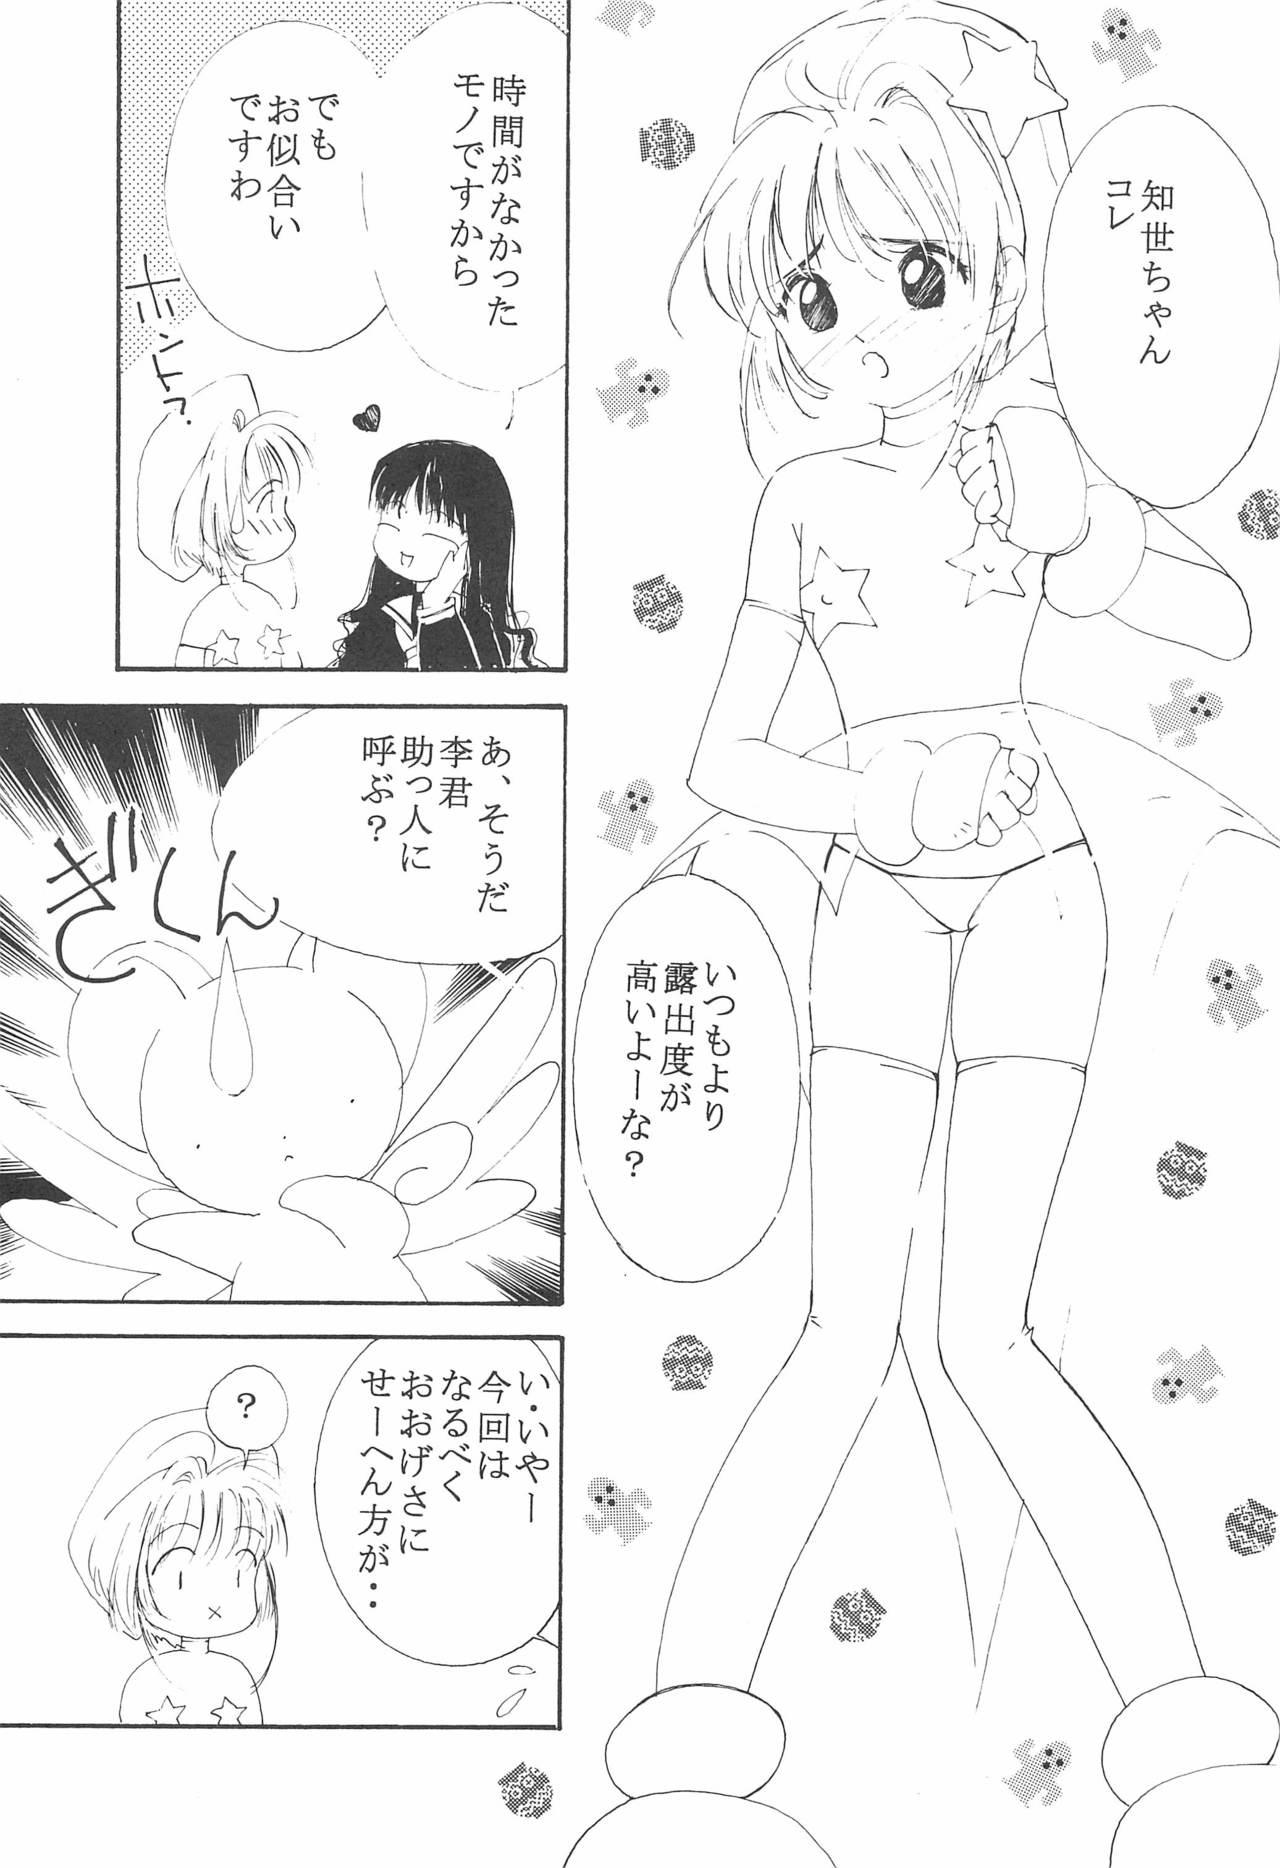 Eating MoMo no Yu 8 - Cardcaptor sakura Anal Licking - Page 7